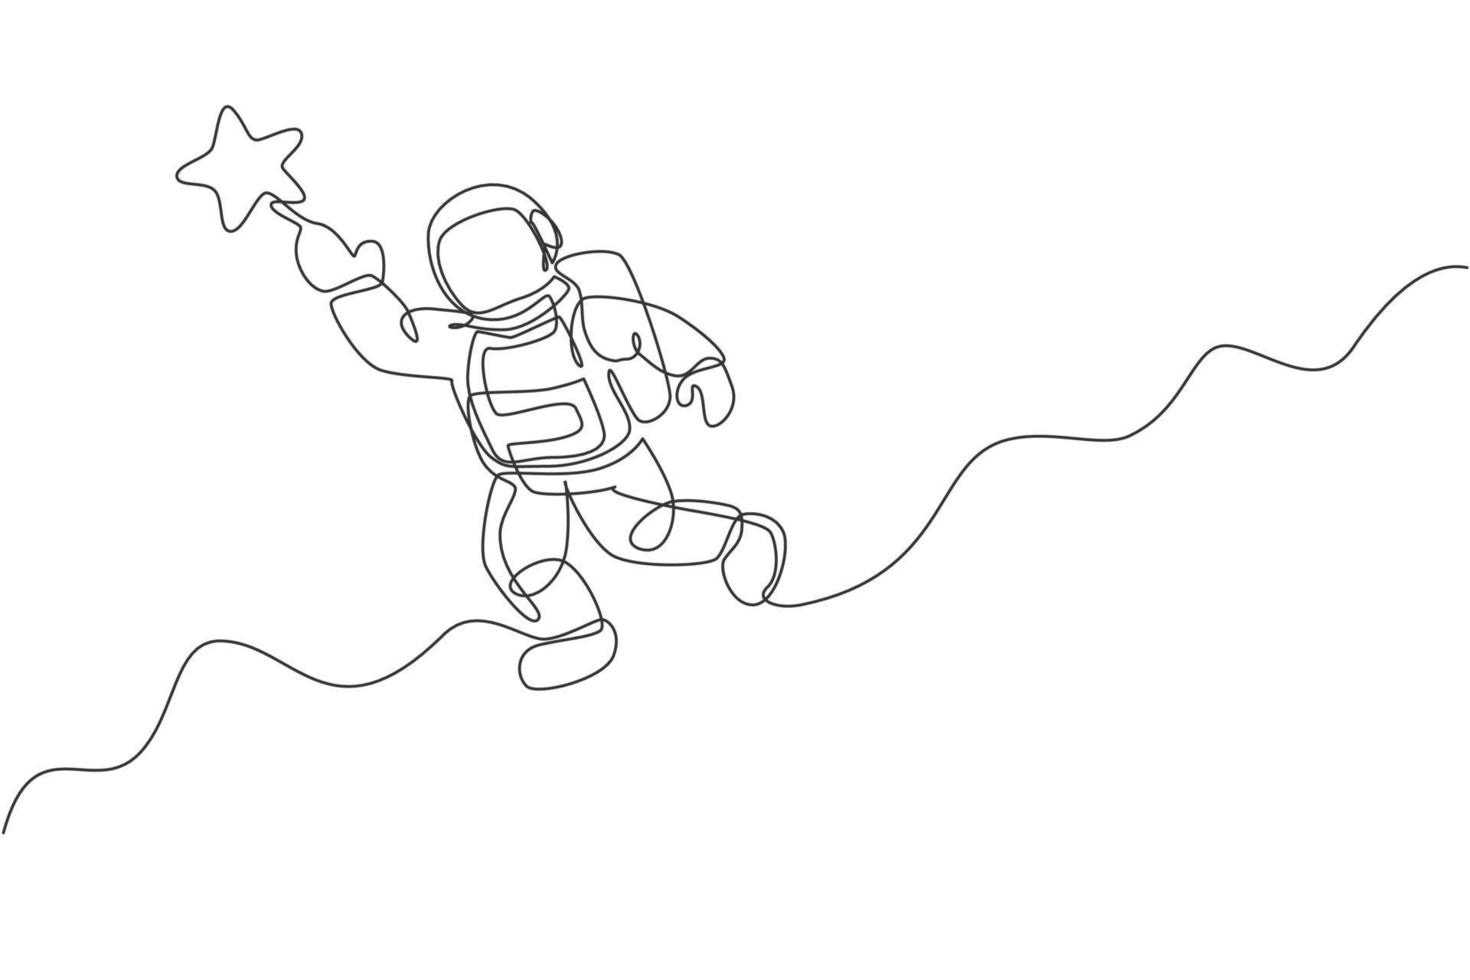 un dibujo de línea continua del cosmonauta explorando el espacio exterior. astronauta alcanzando la estrella voladora. concepto de descubrimiento de galaxias cósmicas de fantasía. Ilustración de vector de diseño gráfico de dibujo de línea única dinámica